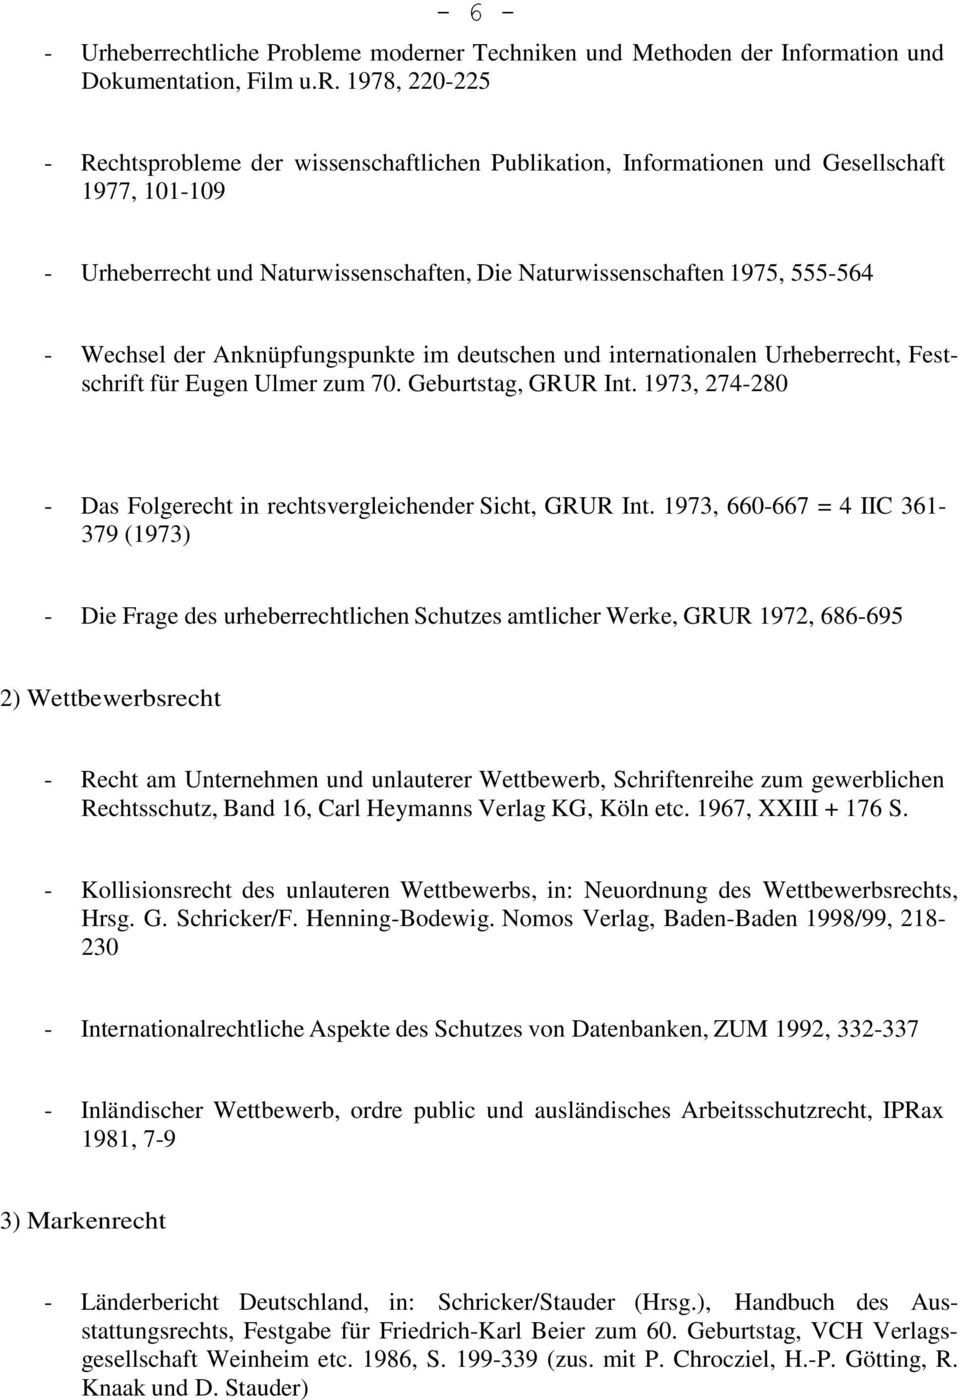 1977, 101-109 - Urheberrecht und Naturwissenschaften, Die Naturwissenschaften 1975, 555-564 - Wechsel der Anknüpfungspunkte im deutschen und internationalen Urheberrecht, Festschrift für Eugen Ulmer